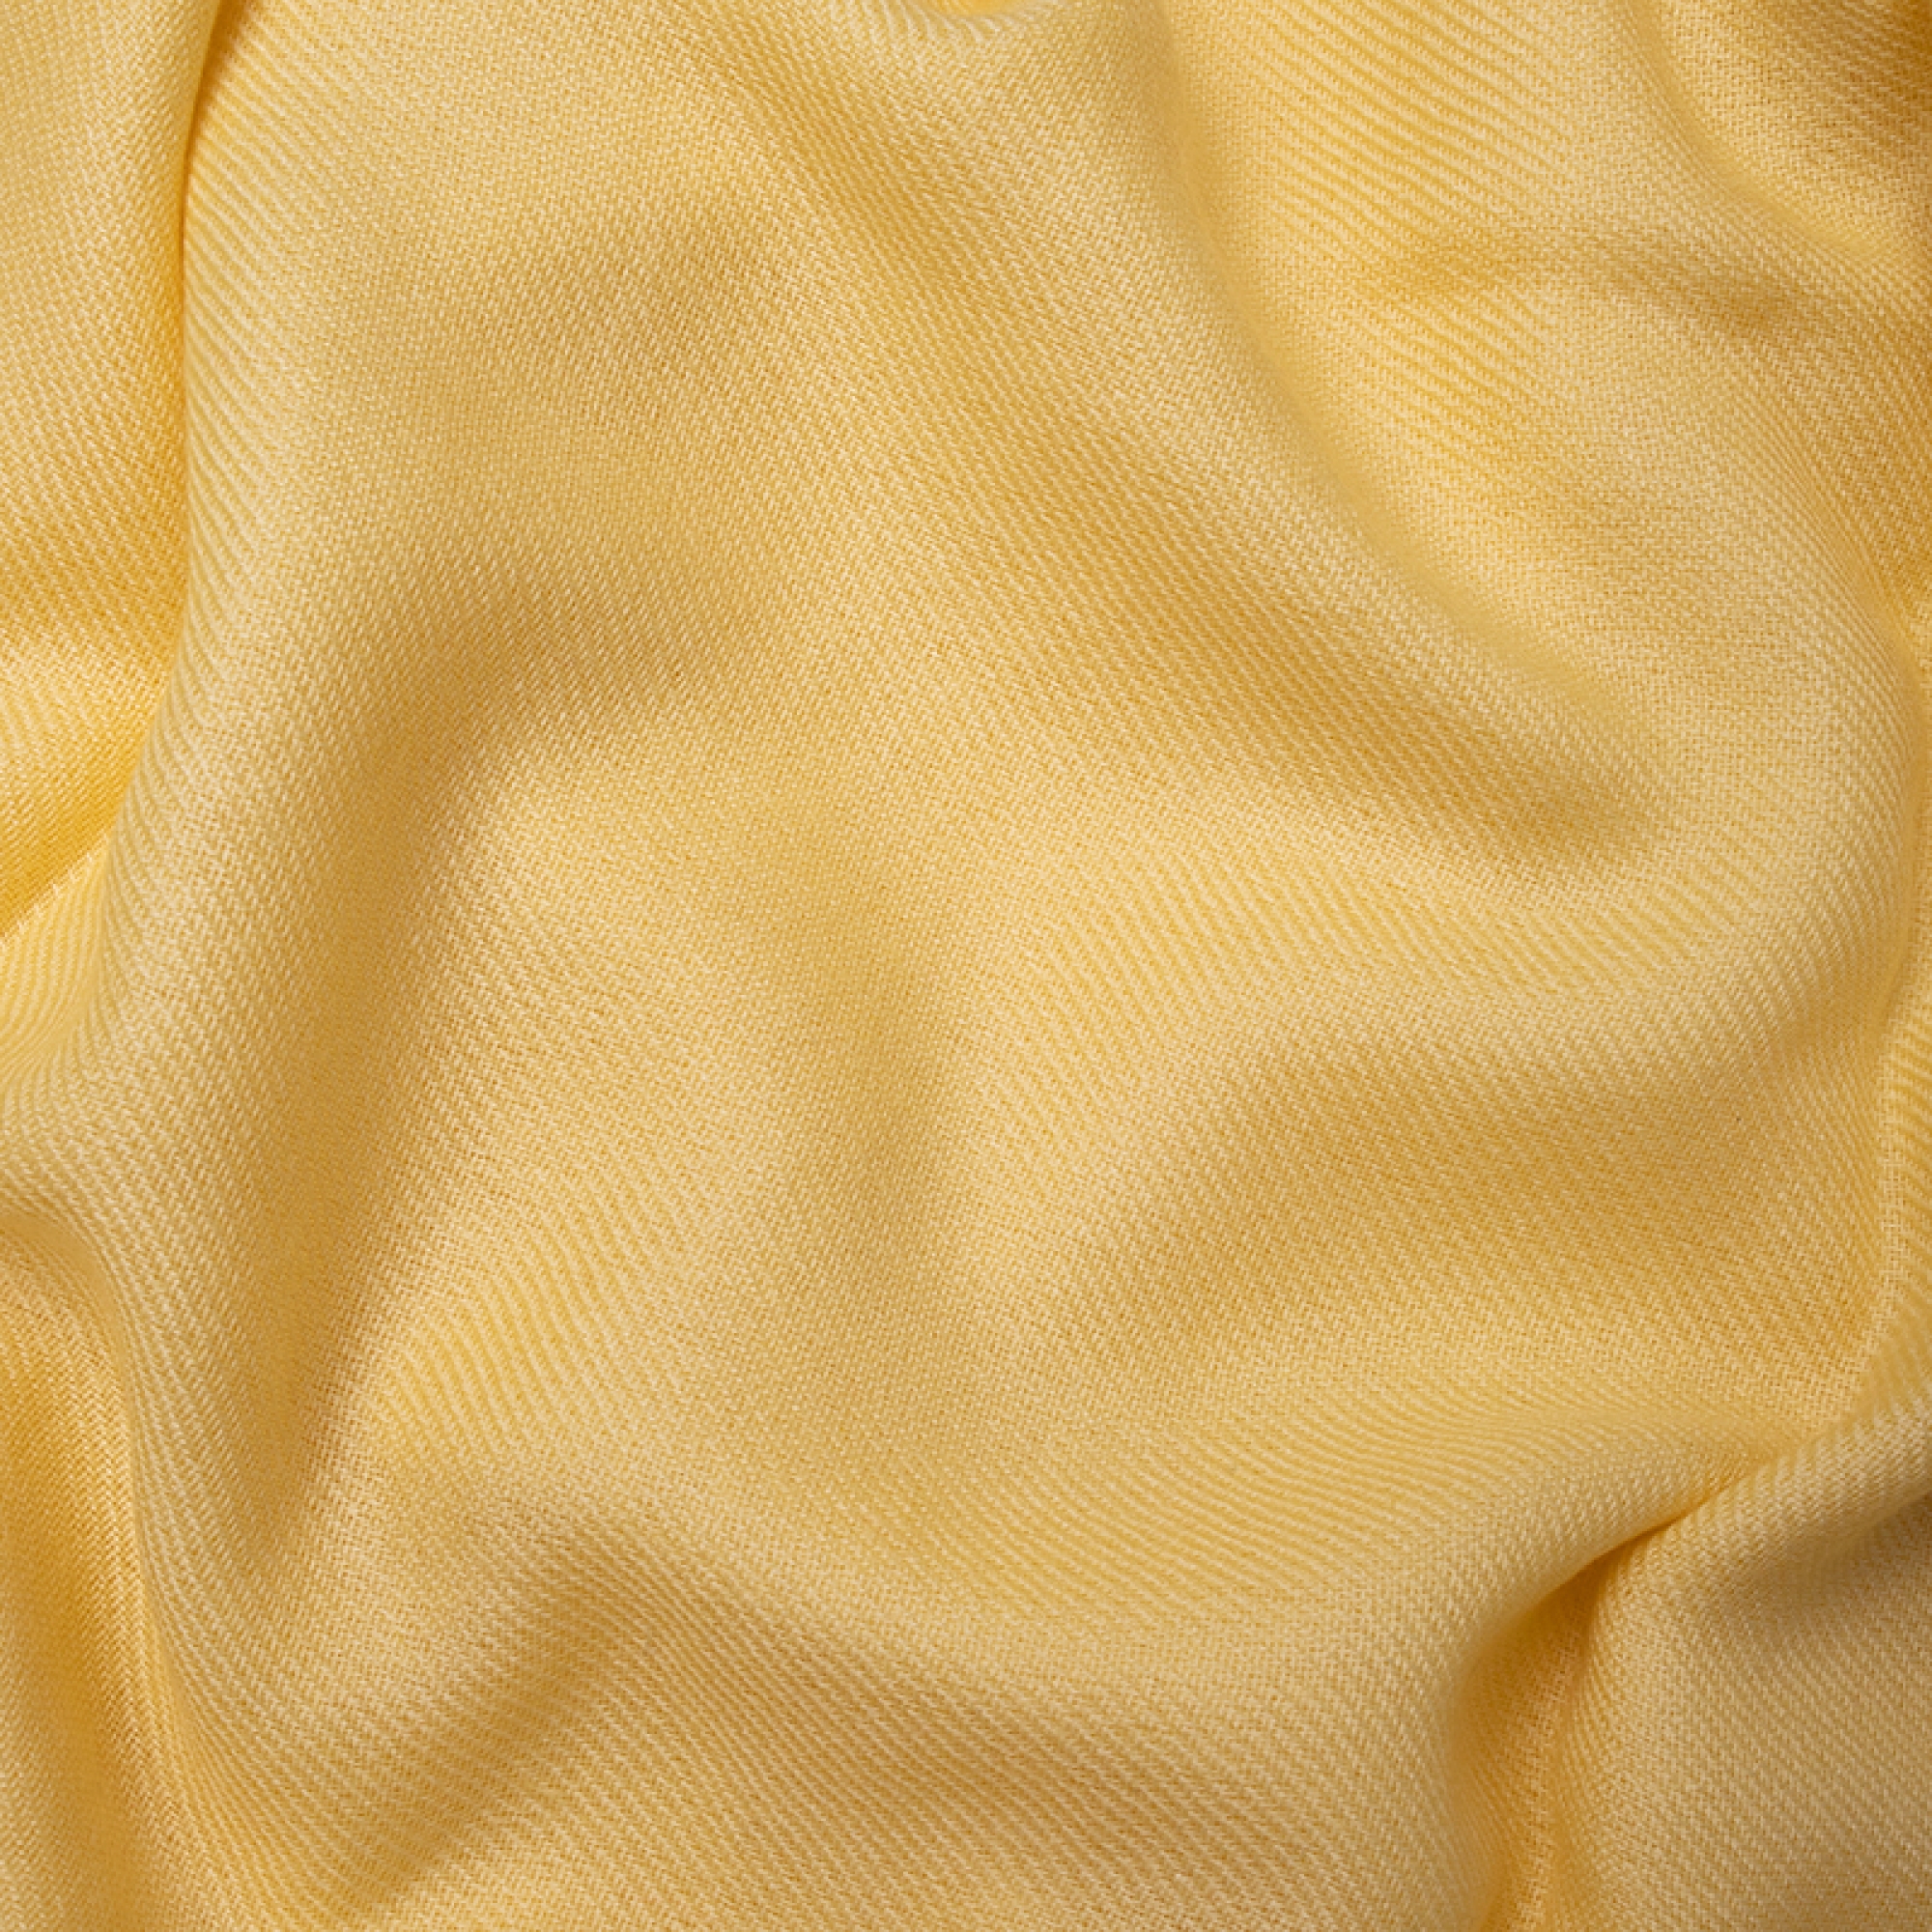 Cachemire accessoires etoles chales niry jaune pastel 200x90cm